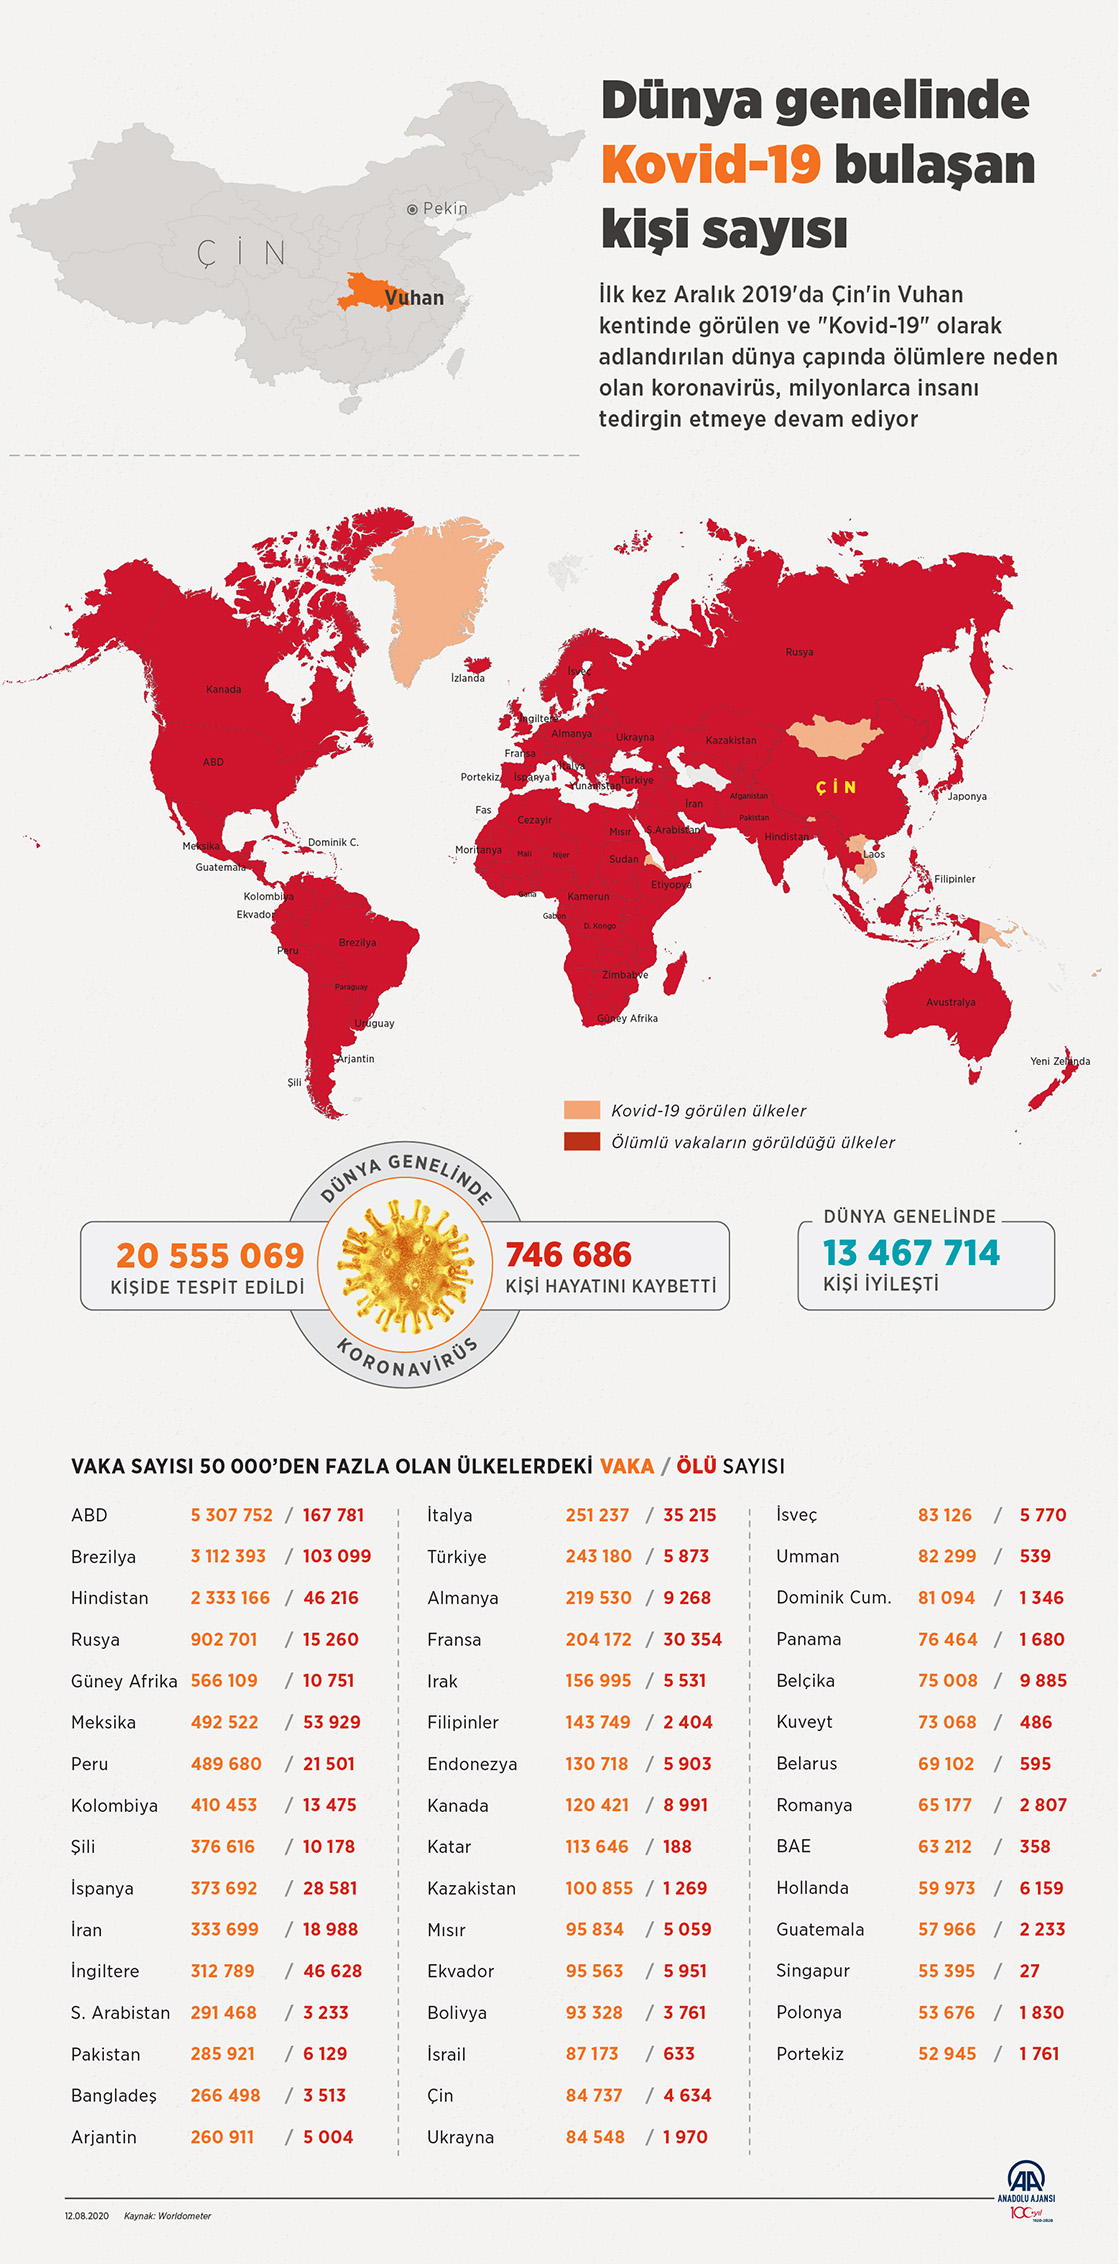 Dünya genelinde Kovid-19 tespit edilen kişi sayısı 20 milyon 526 bini geçti